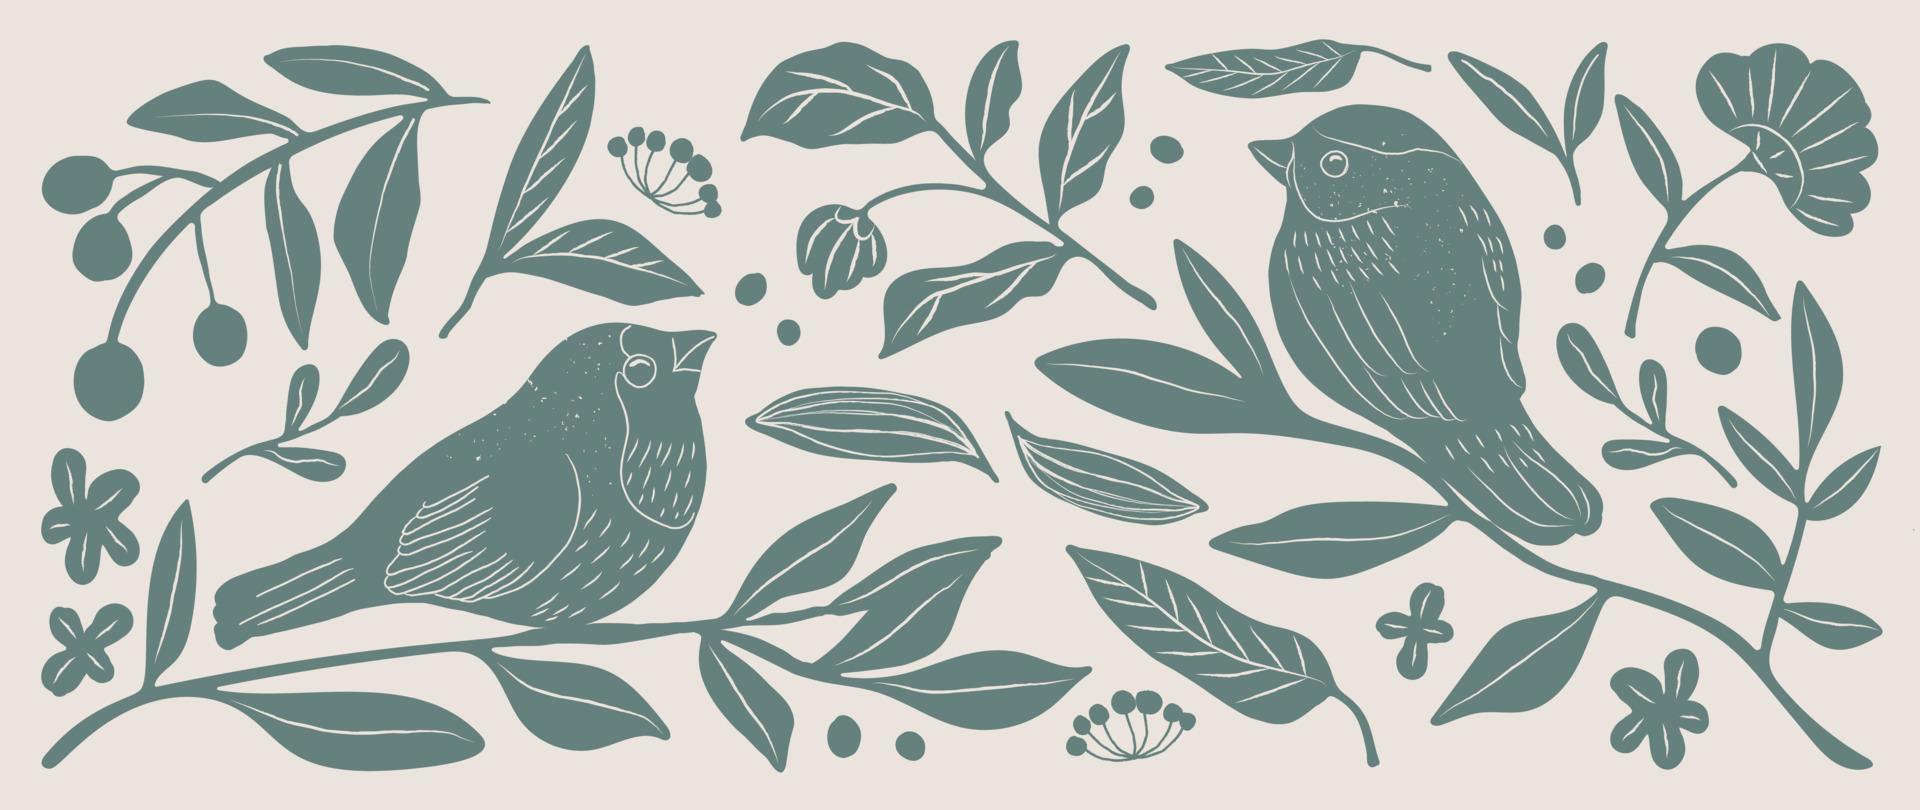 matisse konst bakgrund vektor. abstrakt naturlig hand dragen mönster design med fågel, blomma, löv. enkel samtida stil illustrerade design för tyg, skriva ut, omslag, baner, tapet. vektor